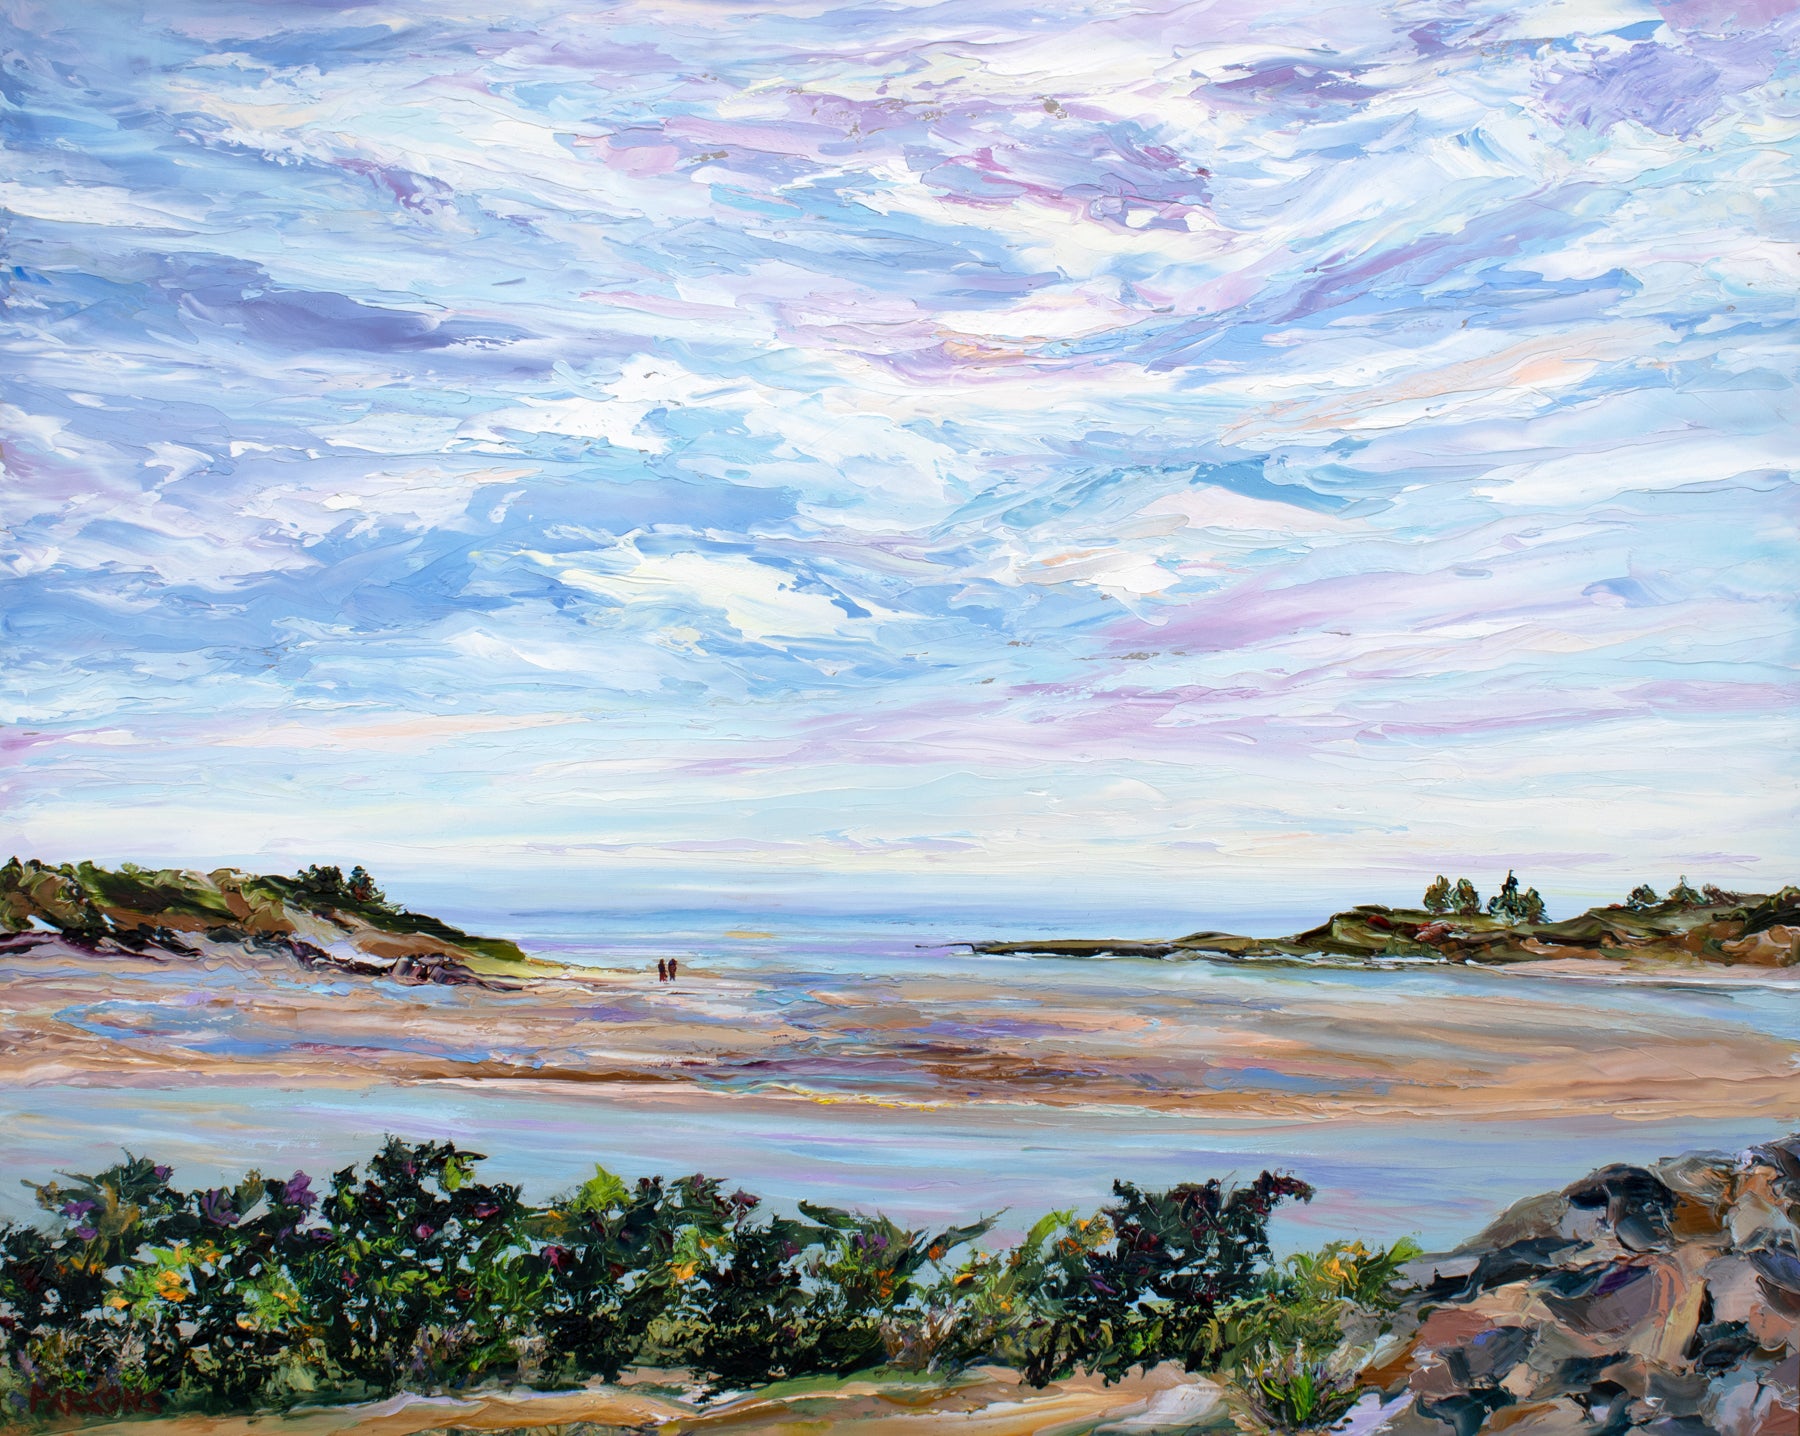 Ogunquit Morning, Maine. Original palette knife oil painting, oil on cradled birch panel.